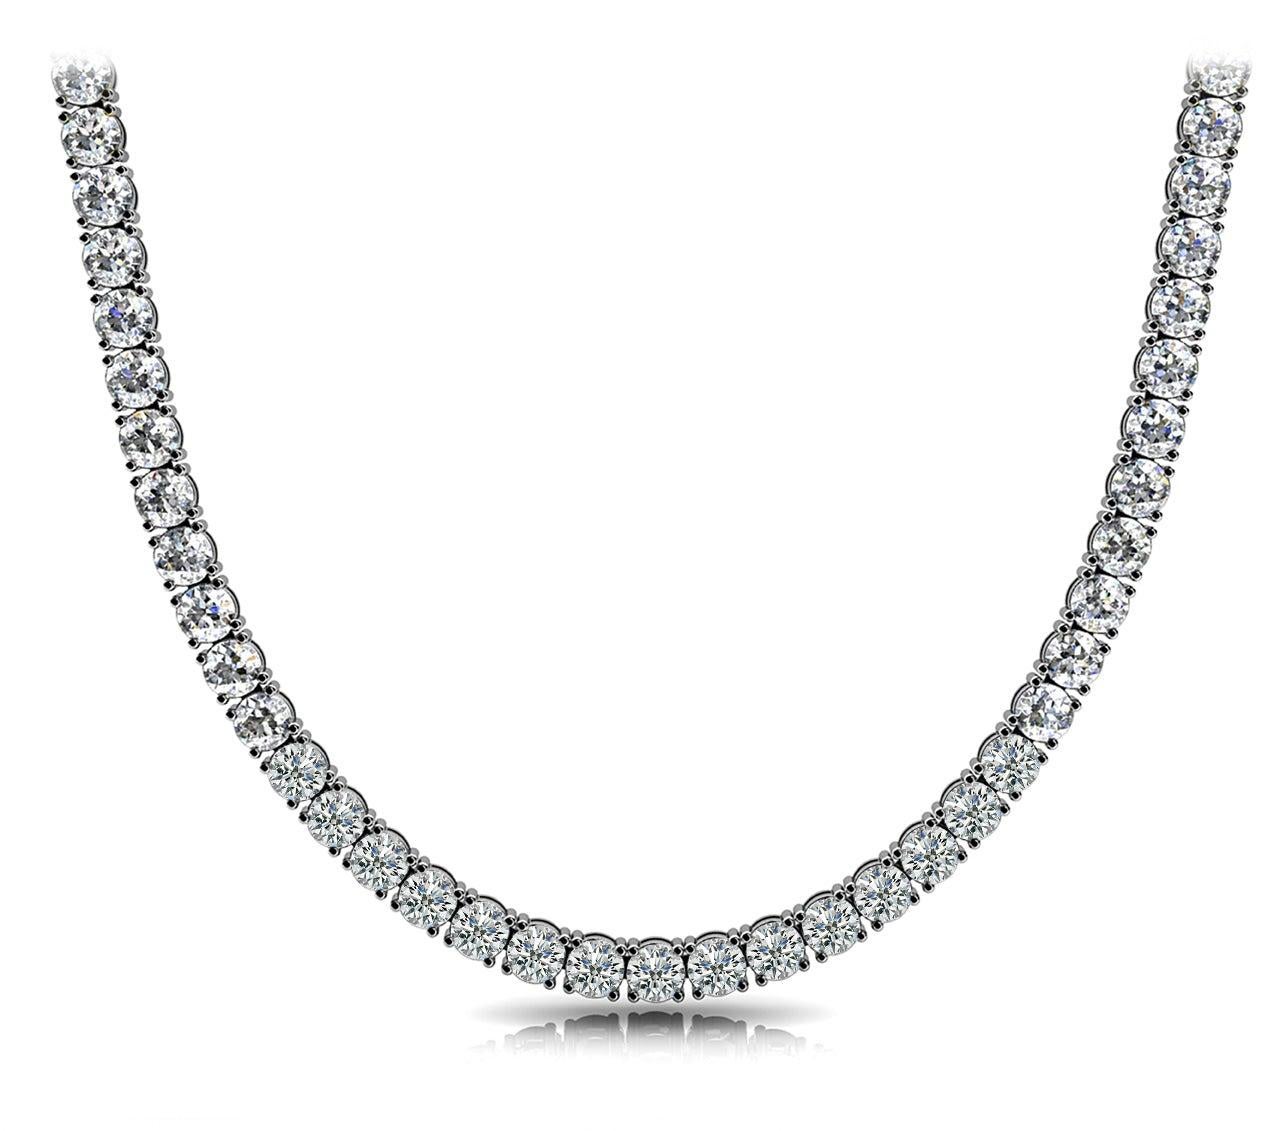 Le collier de tennis CHE est composé de 123 diamants ronds et brillants à 20 pointes pesant au total environ 25 carats, sertis sur de l'or blanc 14 carats à quatre griffes. 
Fabriqués méticuleusement à la main et à la perfection dans notre propre